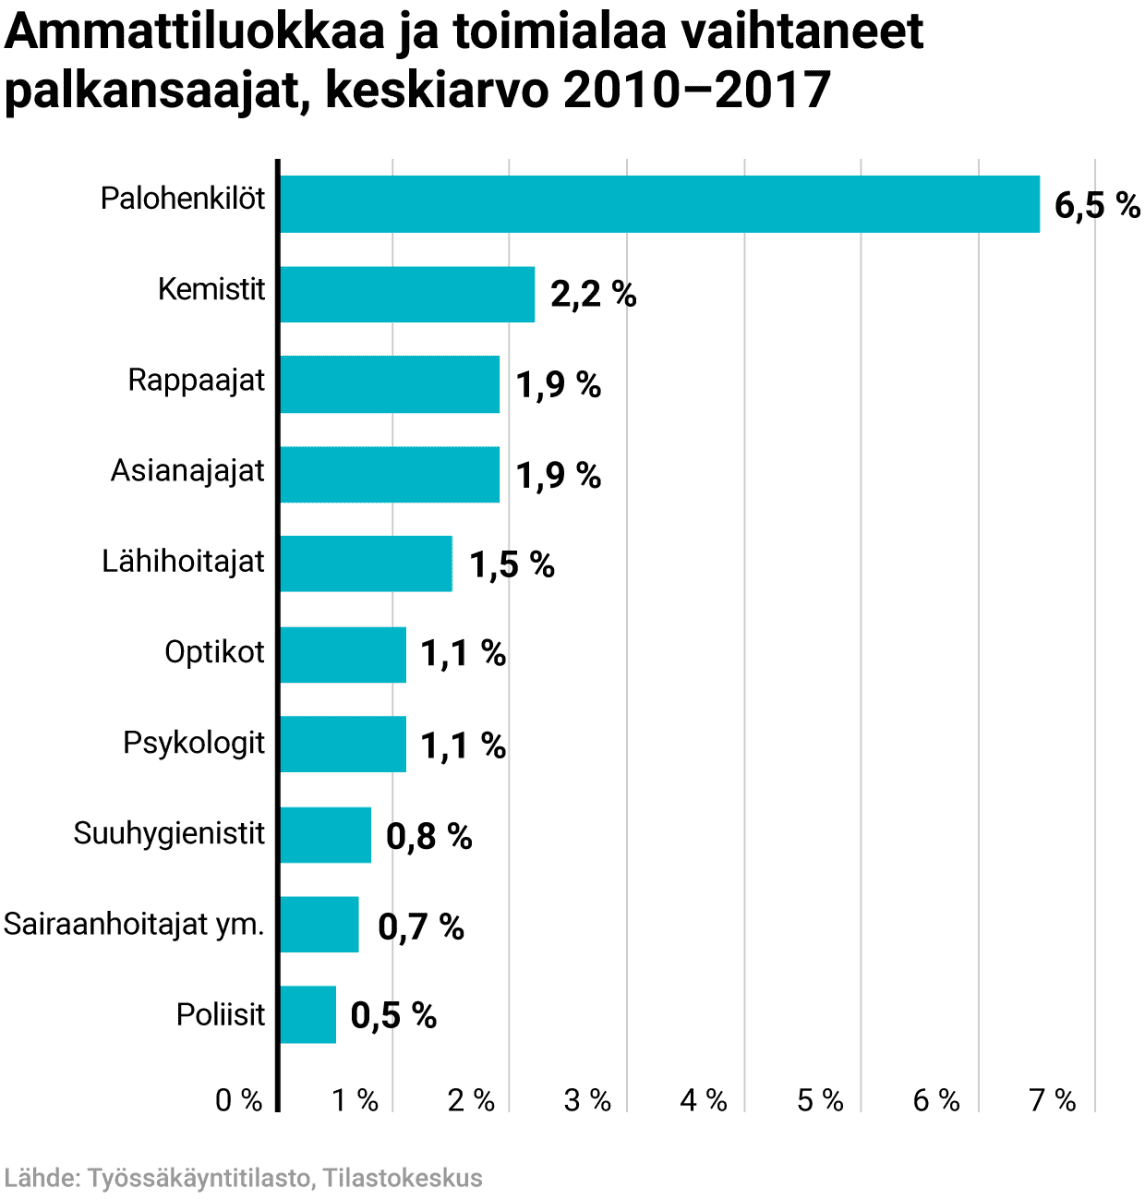 Ammattiluokkaa ja tomialaa vaihtaneet palkansaajat, keskiarvo 2010–2017